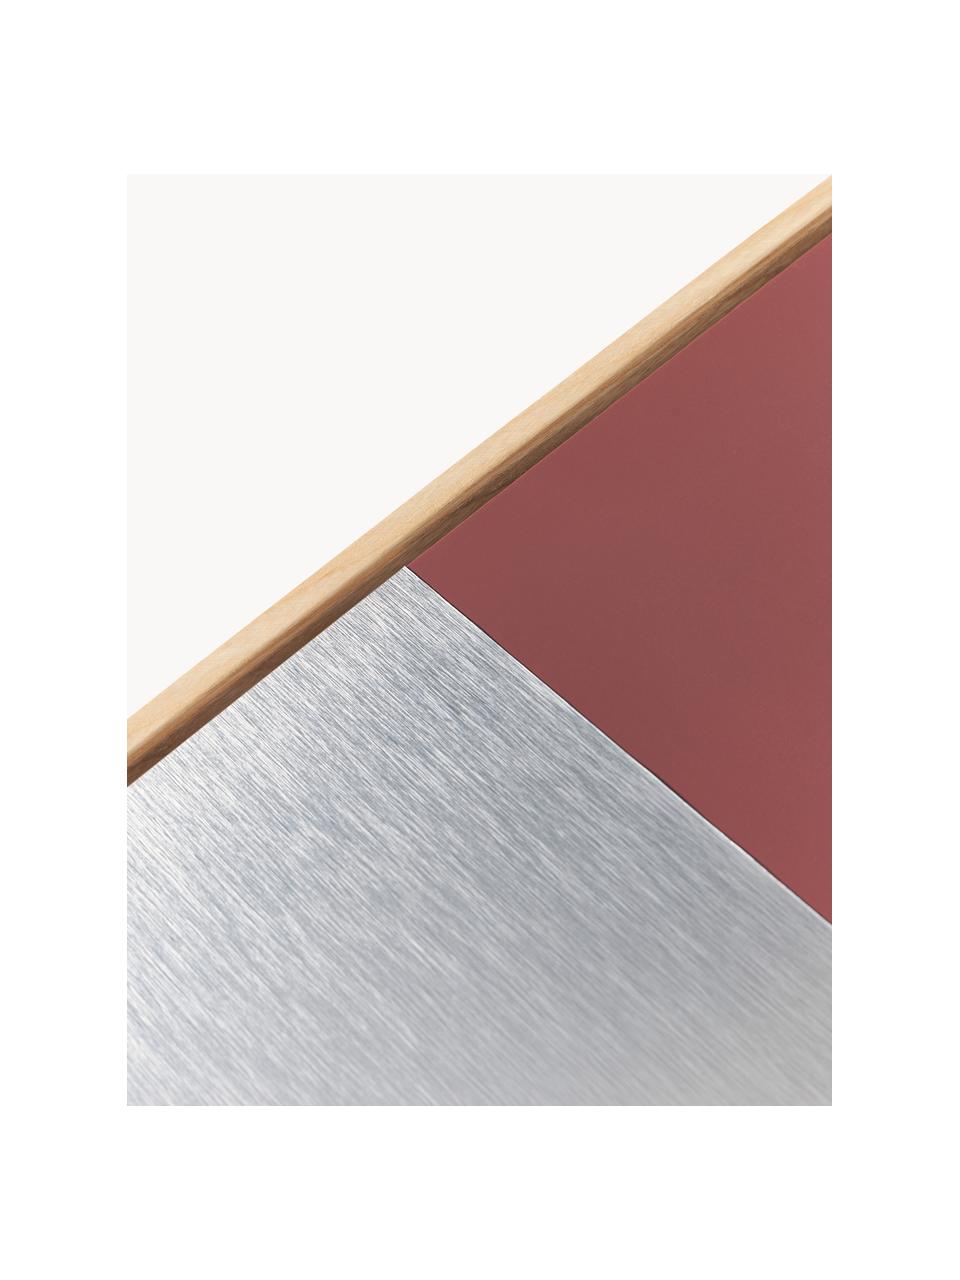 Komplet dekoracji ściennych Duo, 4 elem., Drewno dębowe, płyta pilśniowa średniej gęstości (MDF), aluminium, Drewno dębowe, odcienie srebrnego, rdzawoczerwony, S 50 x G 50 cm